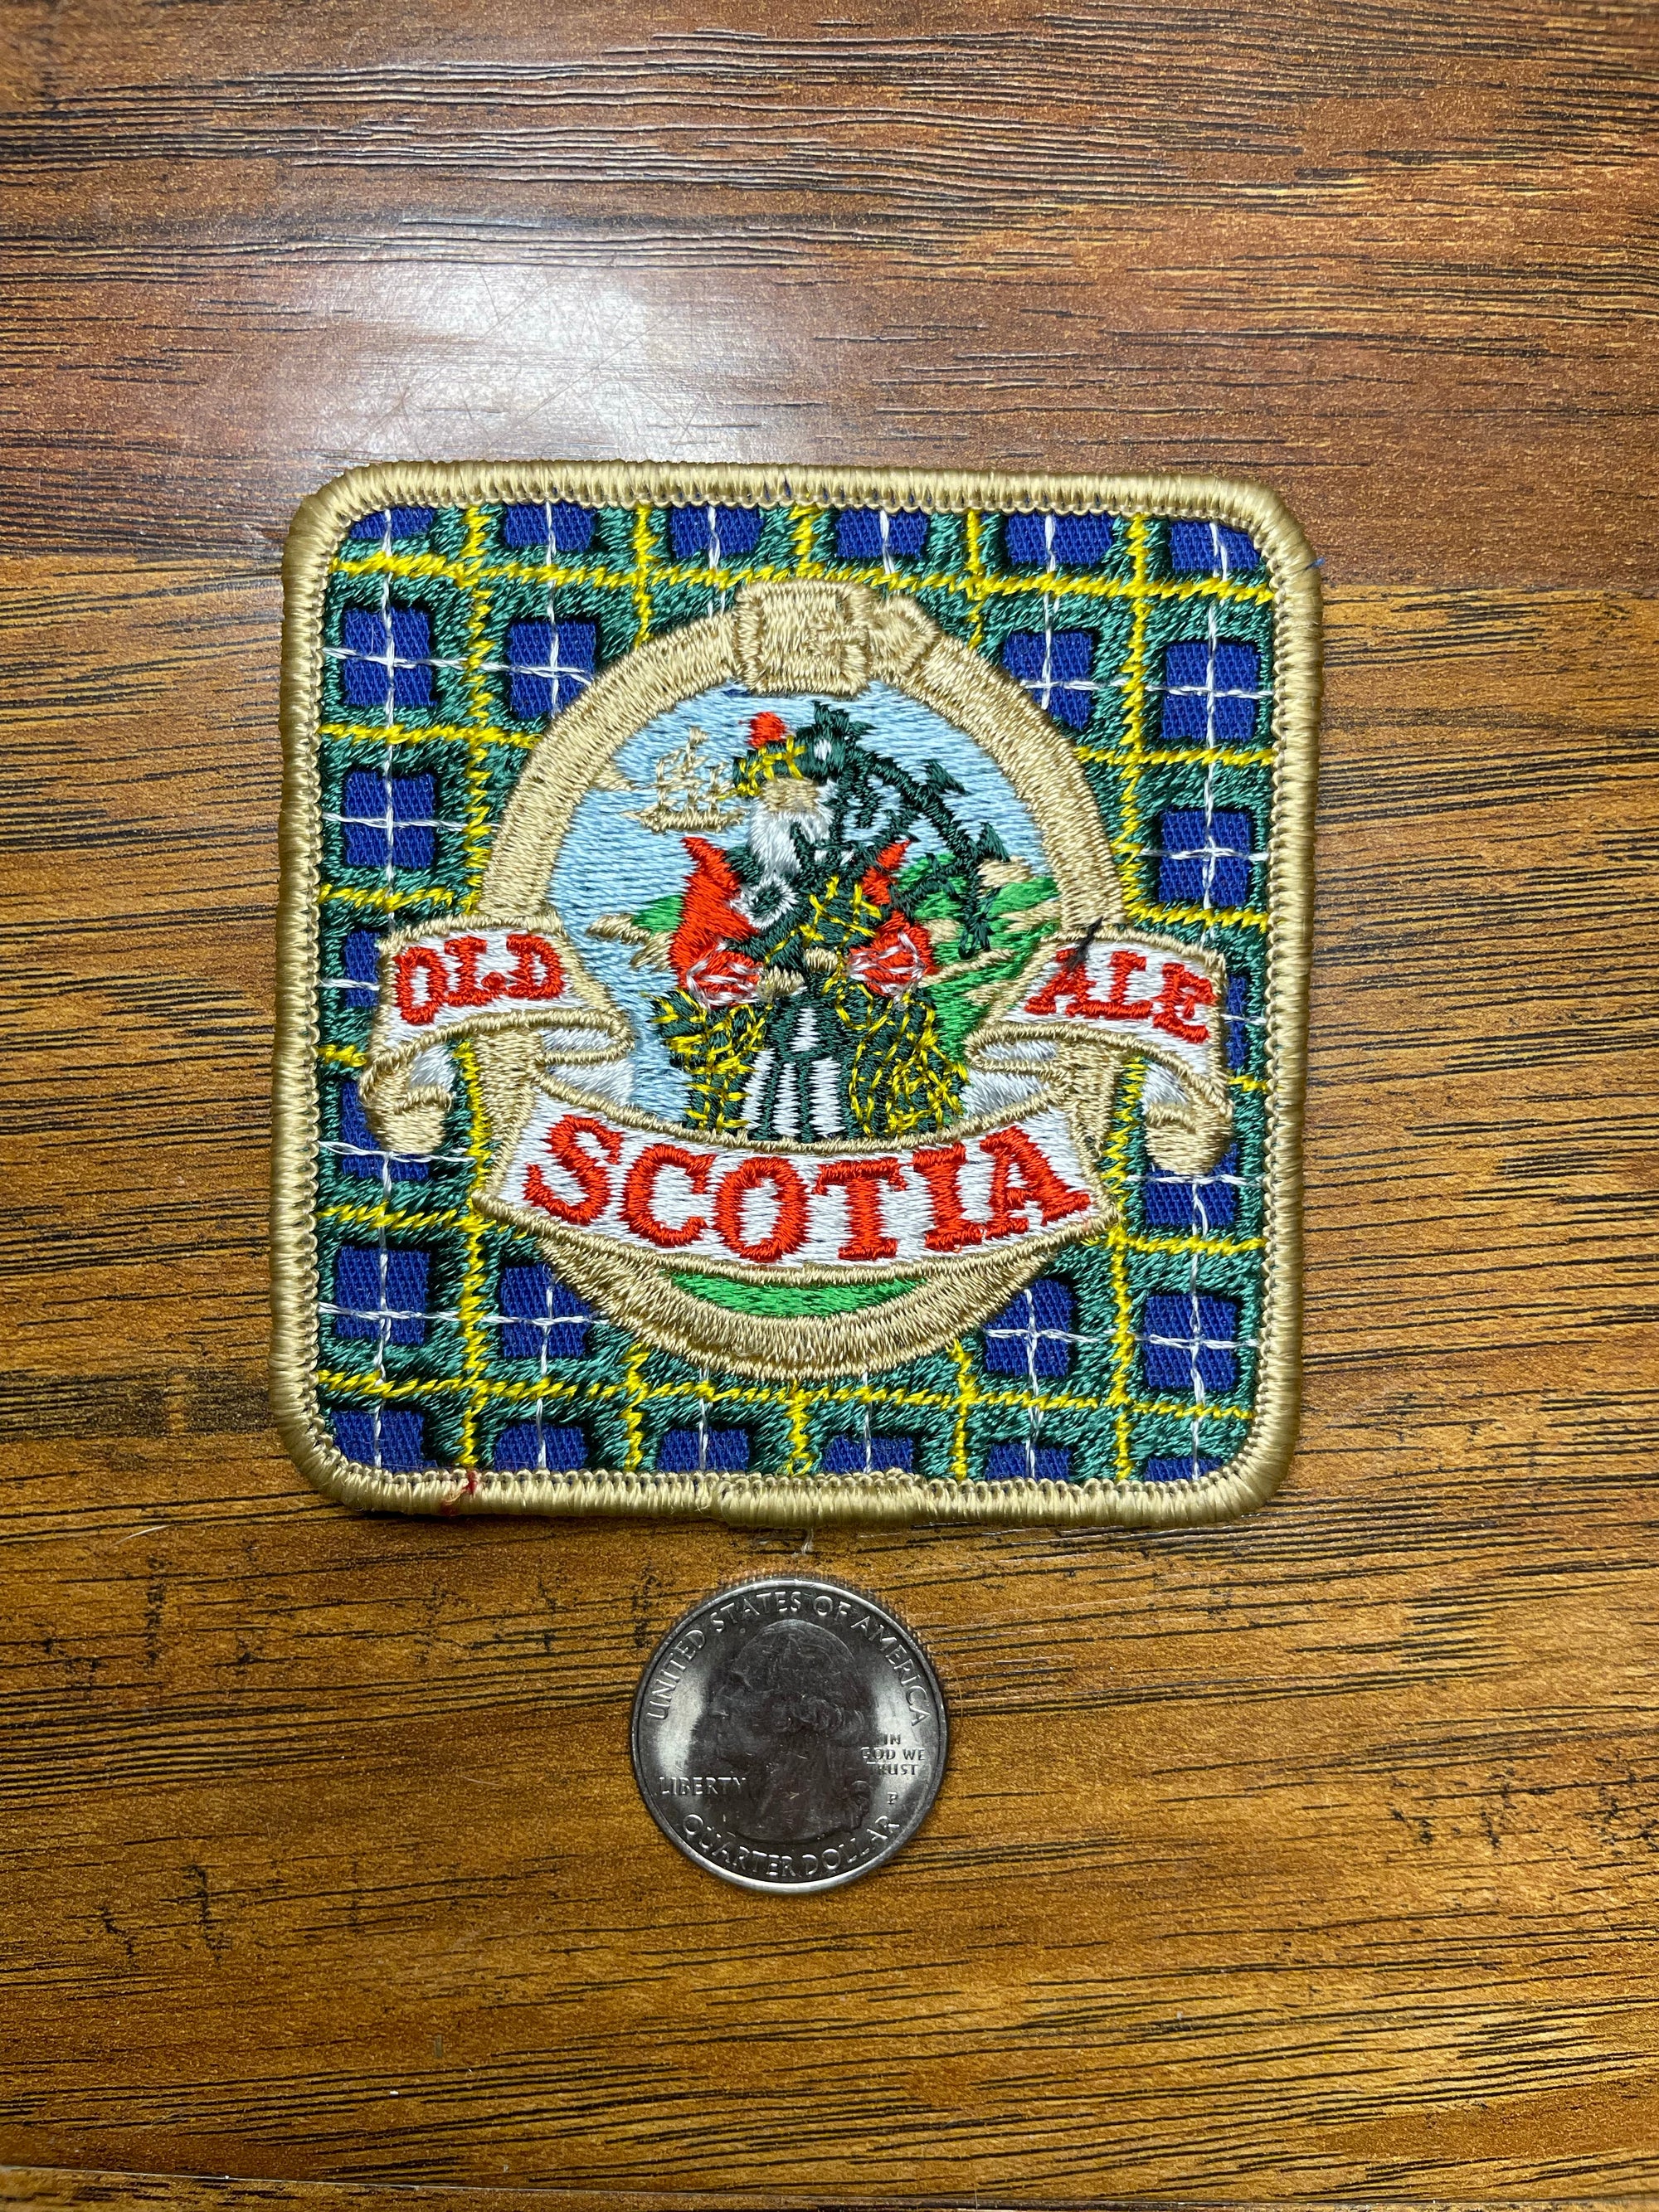 Vintage Old Ale Scotia